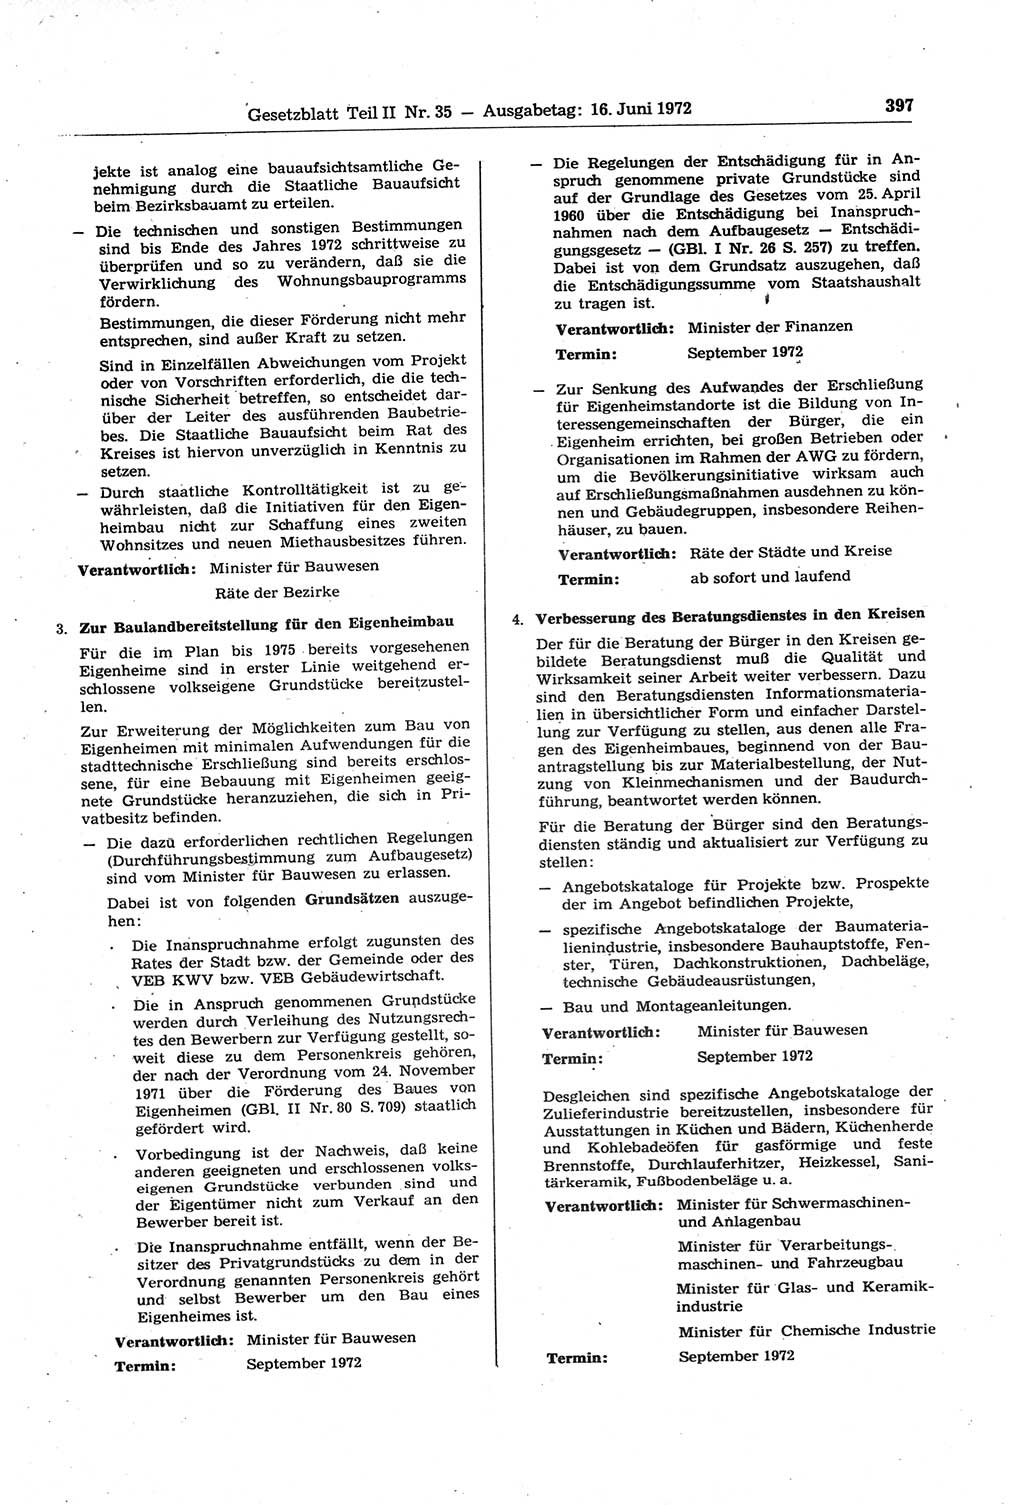 Gesetzblatt (GBl.) der Deutschen Demokratischen Republik (DDR) Teil ⅠⅠ 1972, Seite 397 (GBl. DDR ⅠⅠ 1972, S. 397)